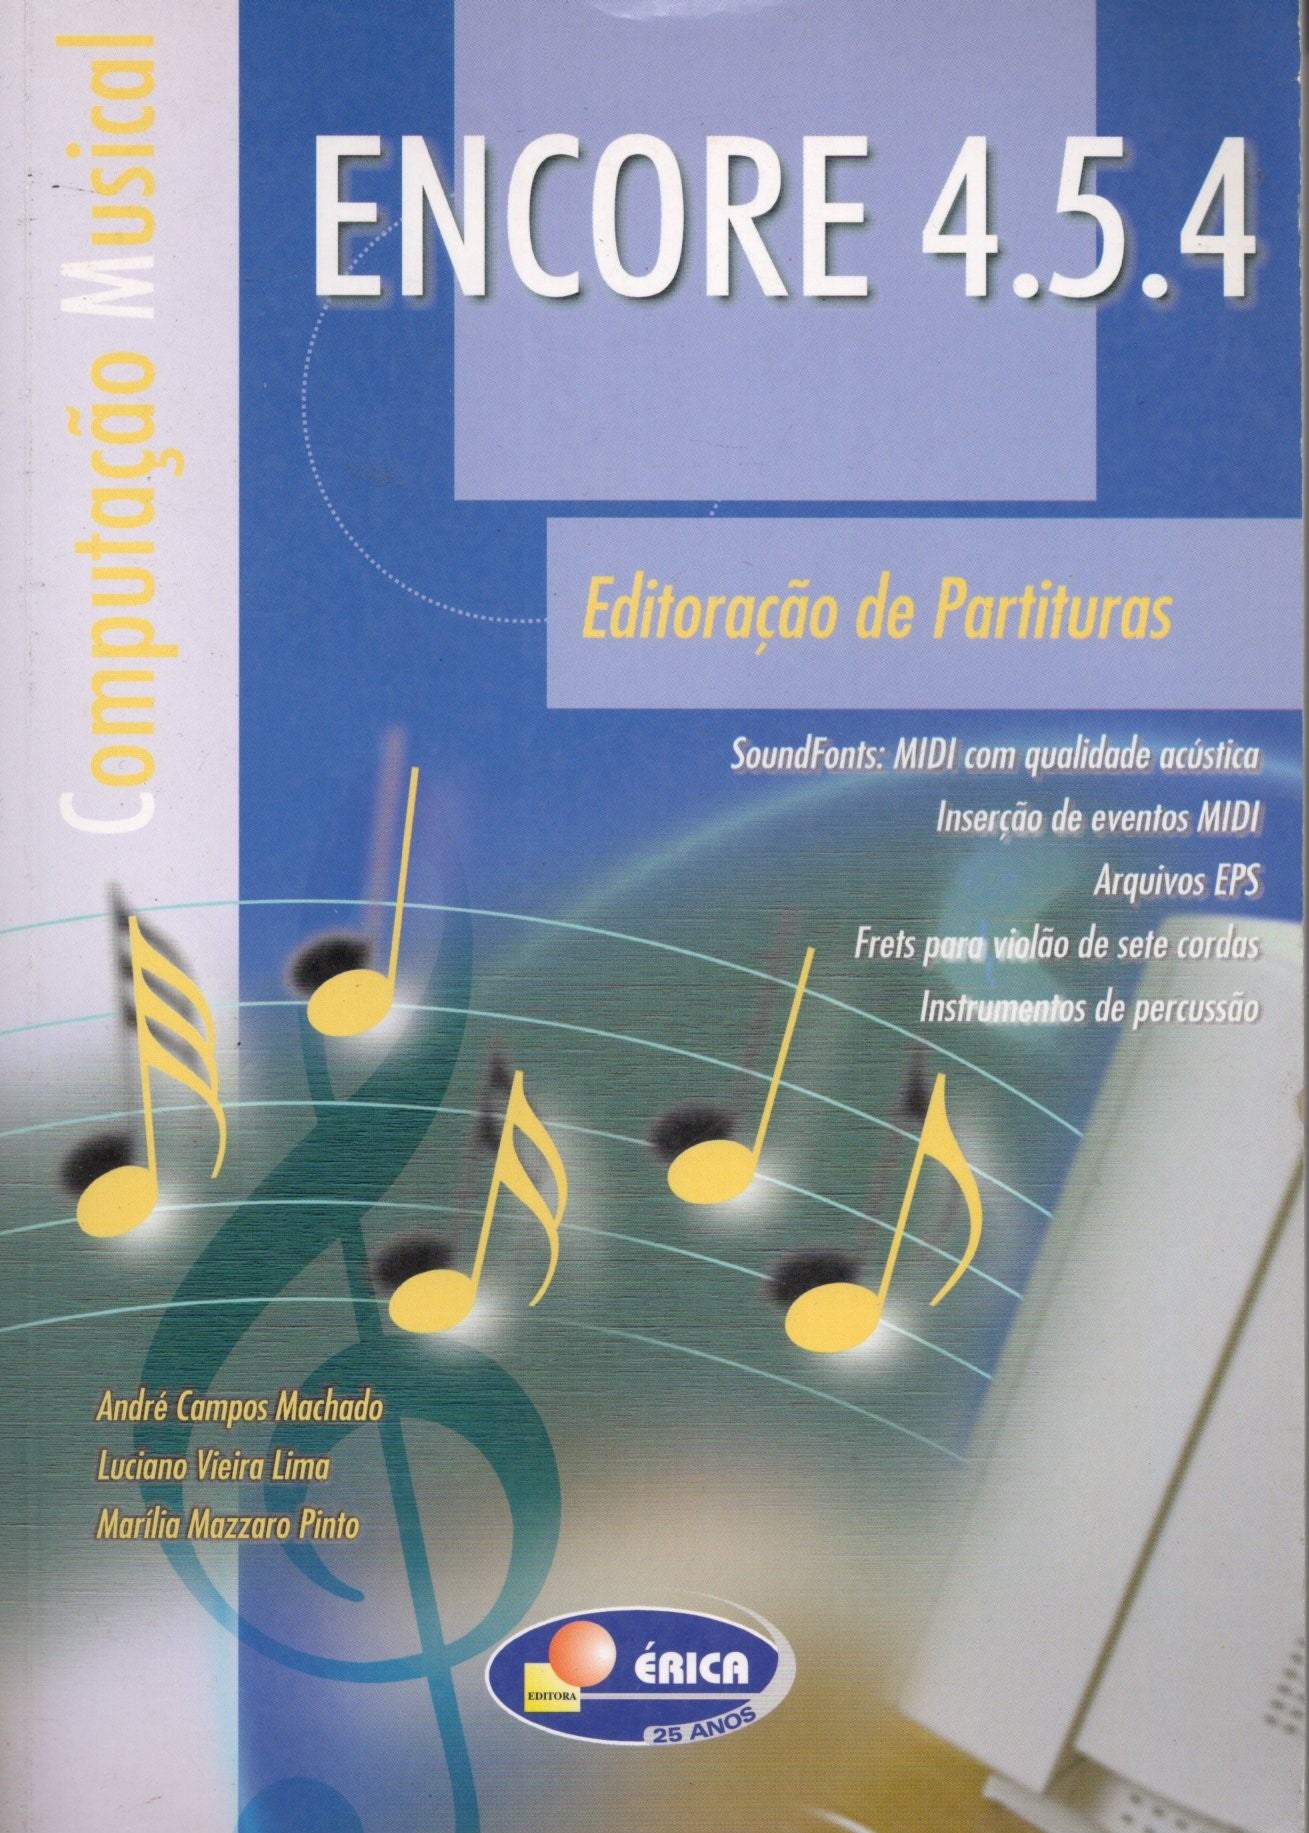 LIVRO - Encore 4.5.4 Editoração de Partituras de André Campos Machado - USADO